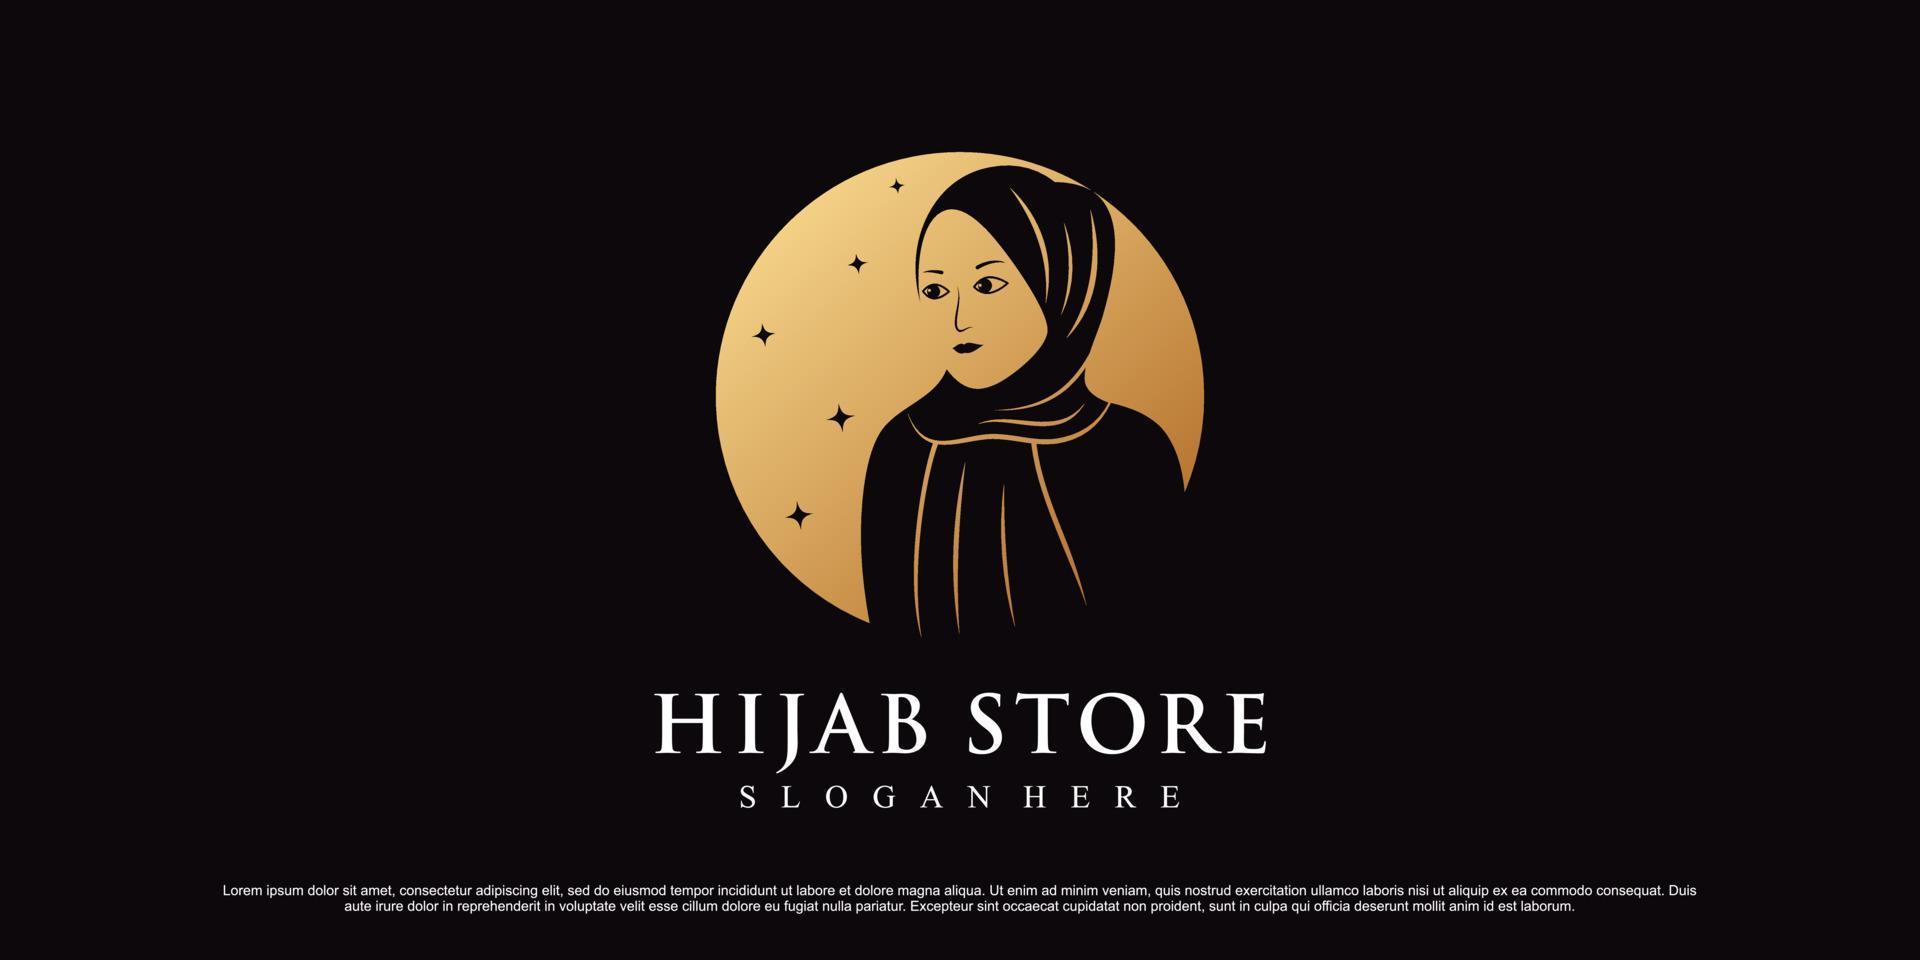 Beauty Hijab oder Hijab Store Logo für muslimische Frau mit kreativem Element Premium-Vektor vektor